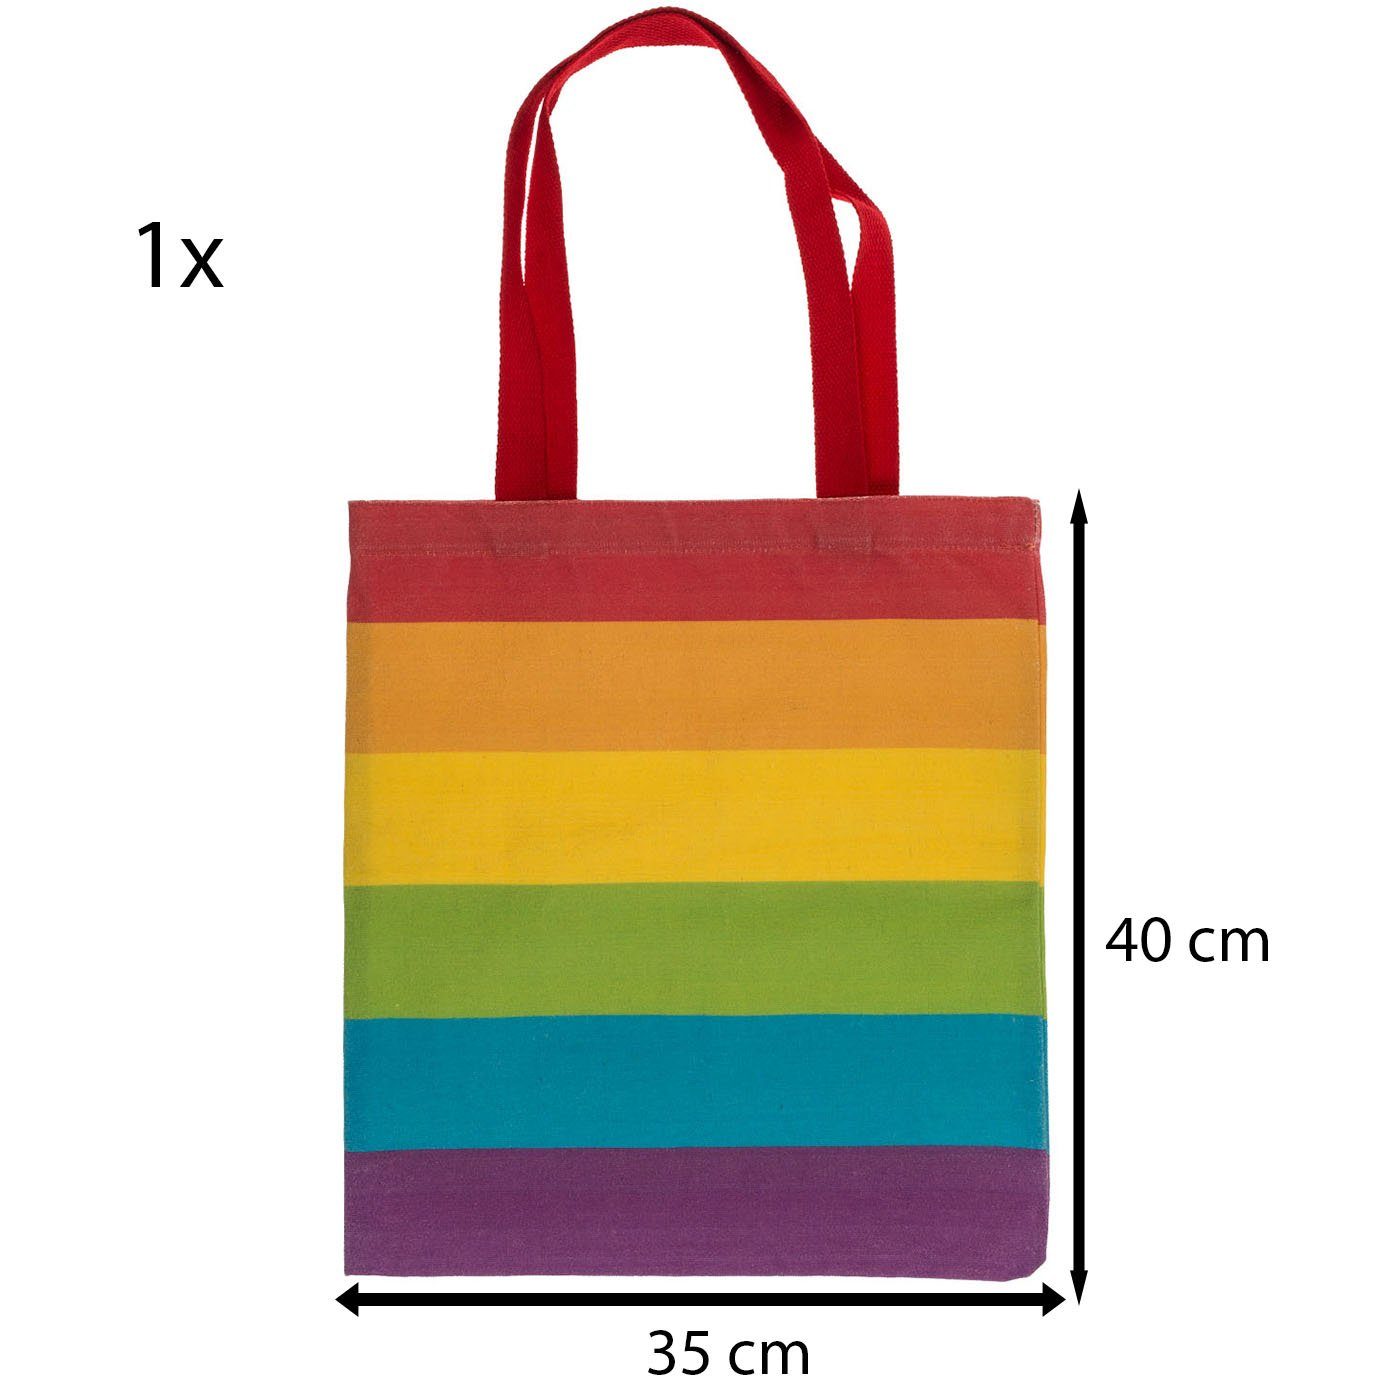 ReWu Einkaufsbeutel ReWu CSD Regenbogen SET Pride